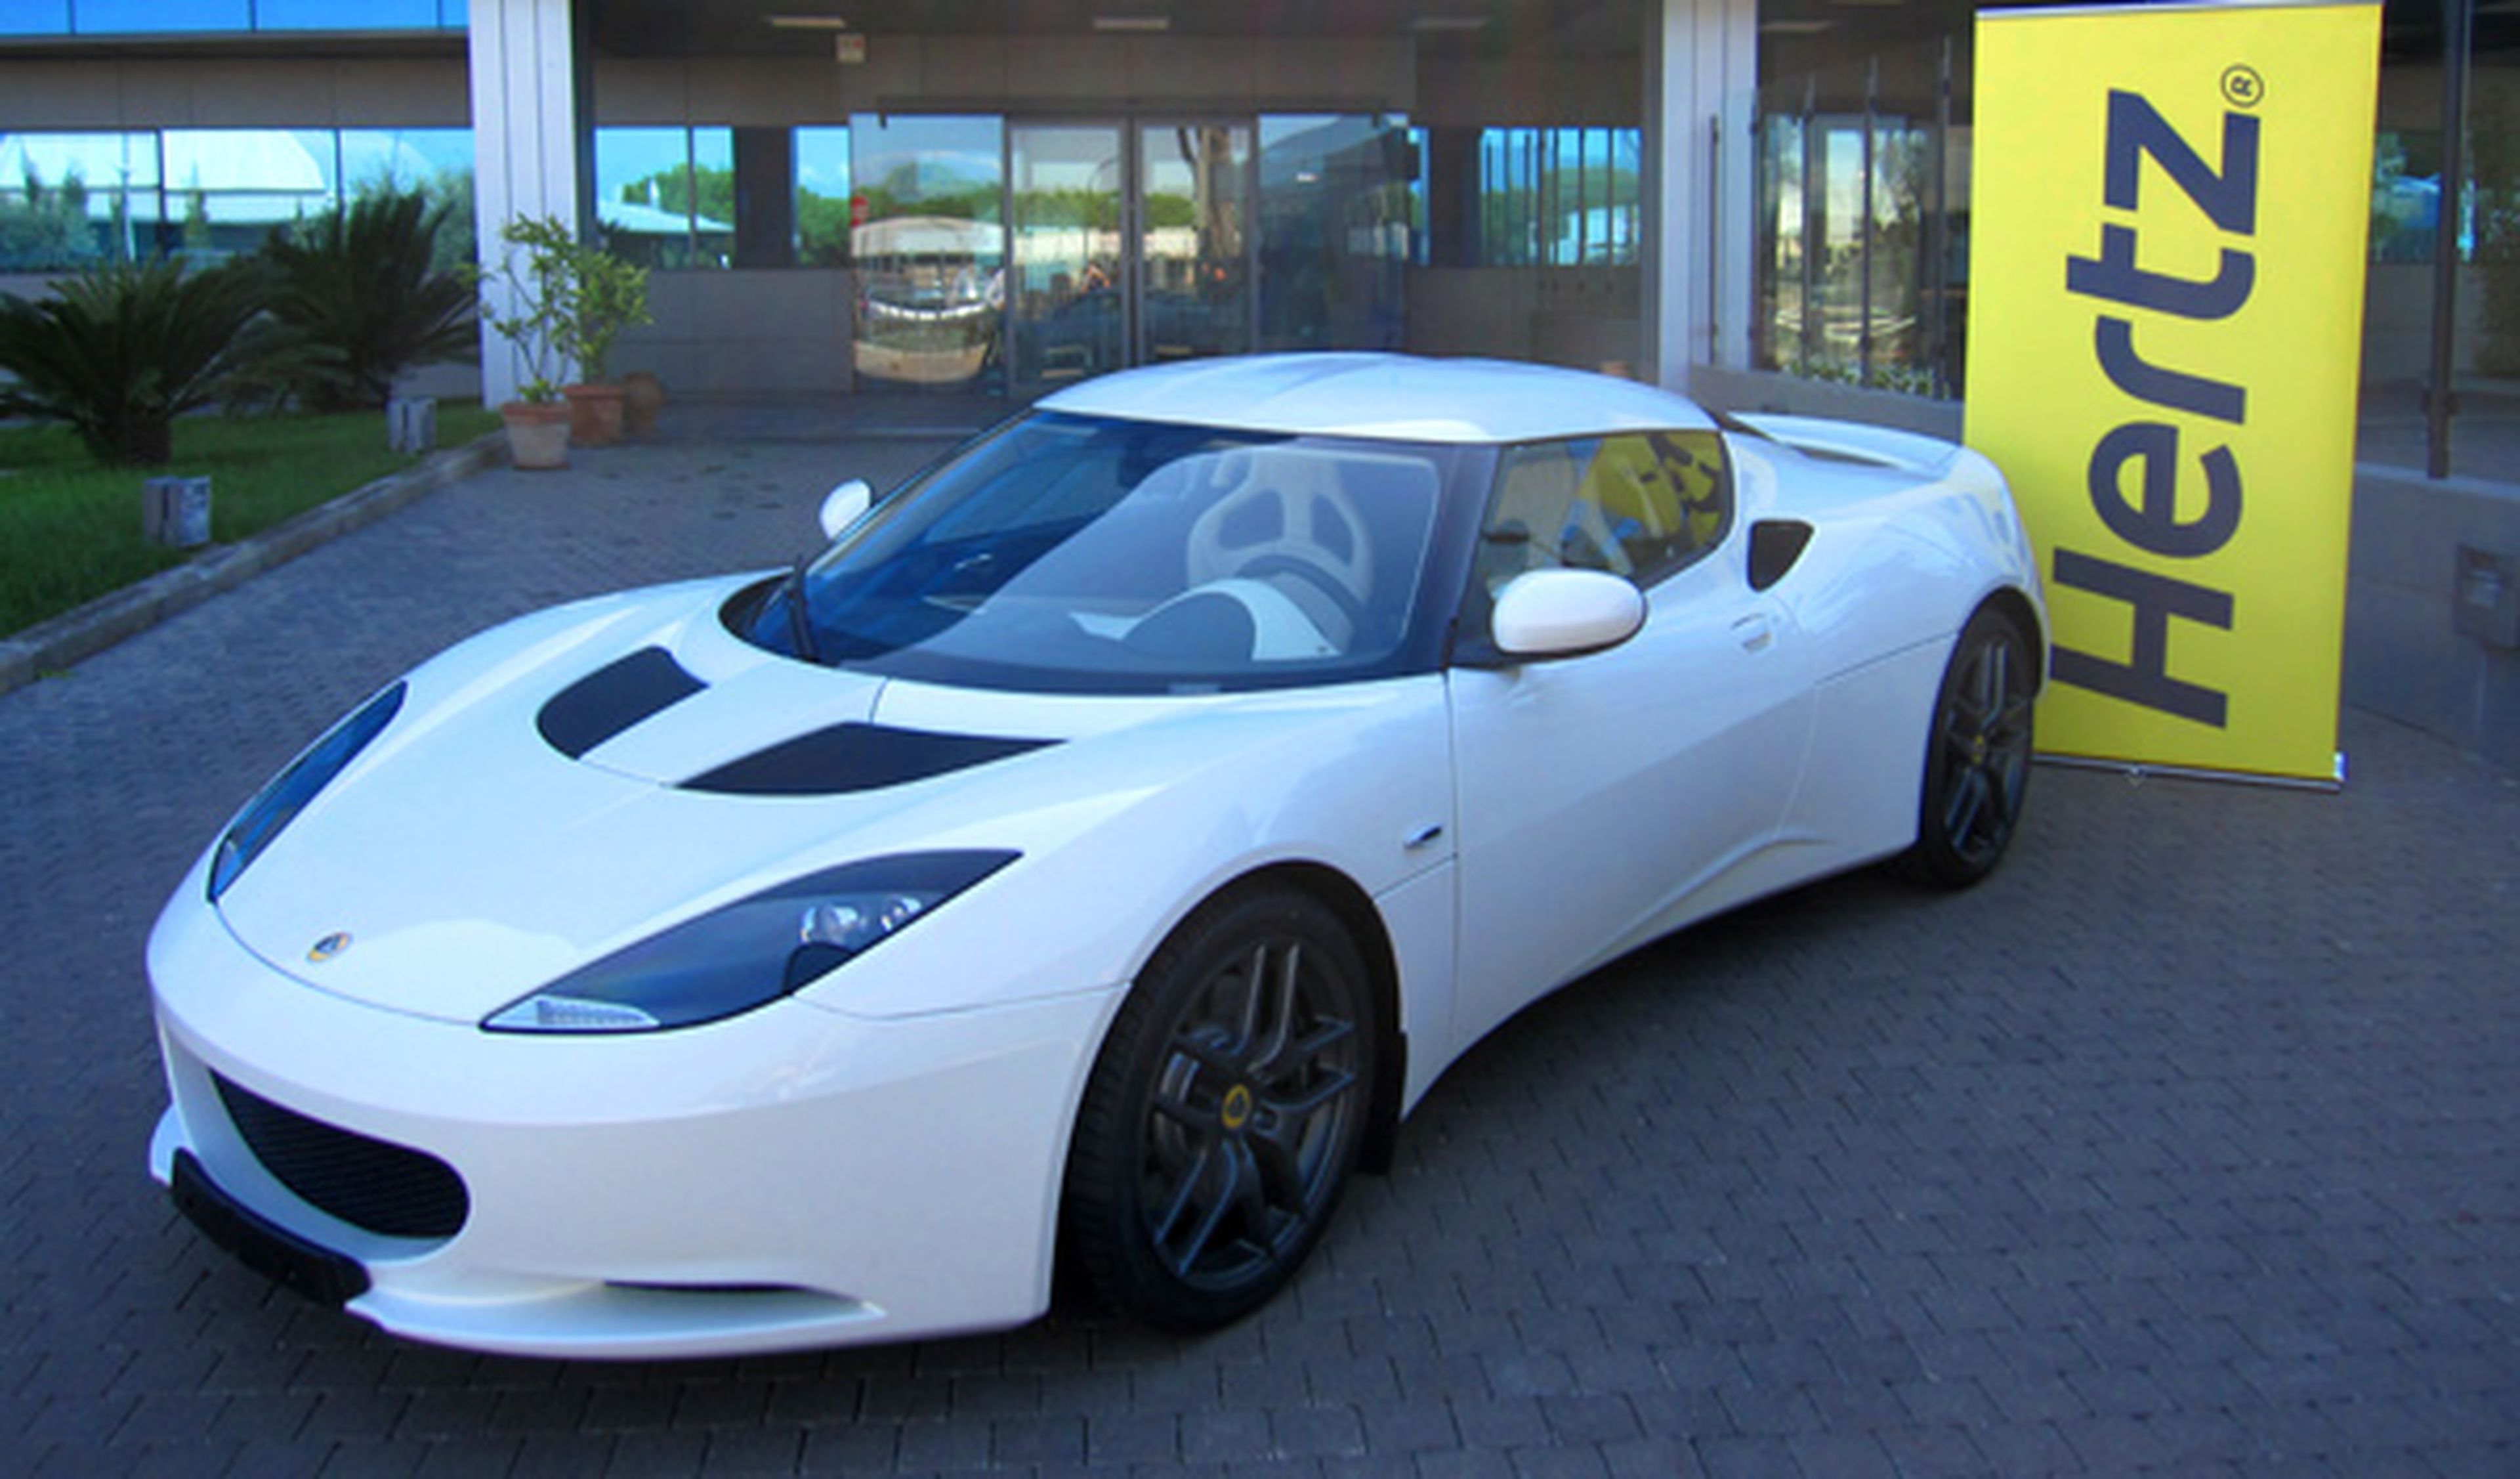 Lotus presentará un nuevo deportivo en el Salón de Ginebra